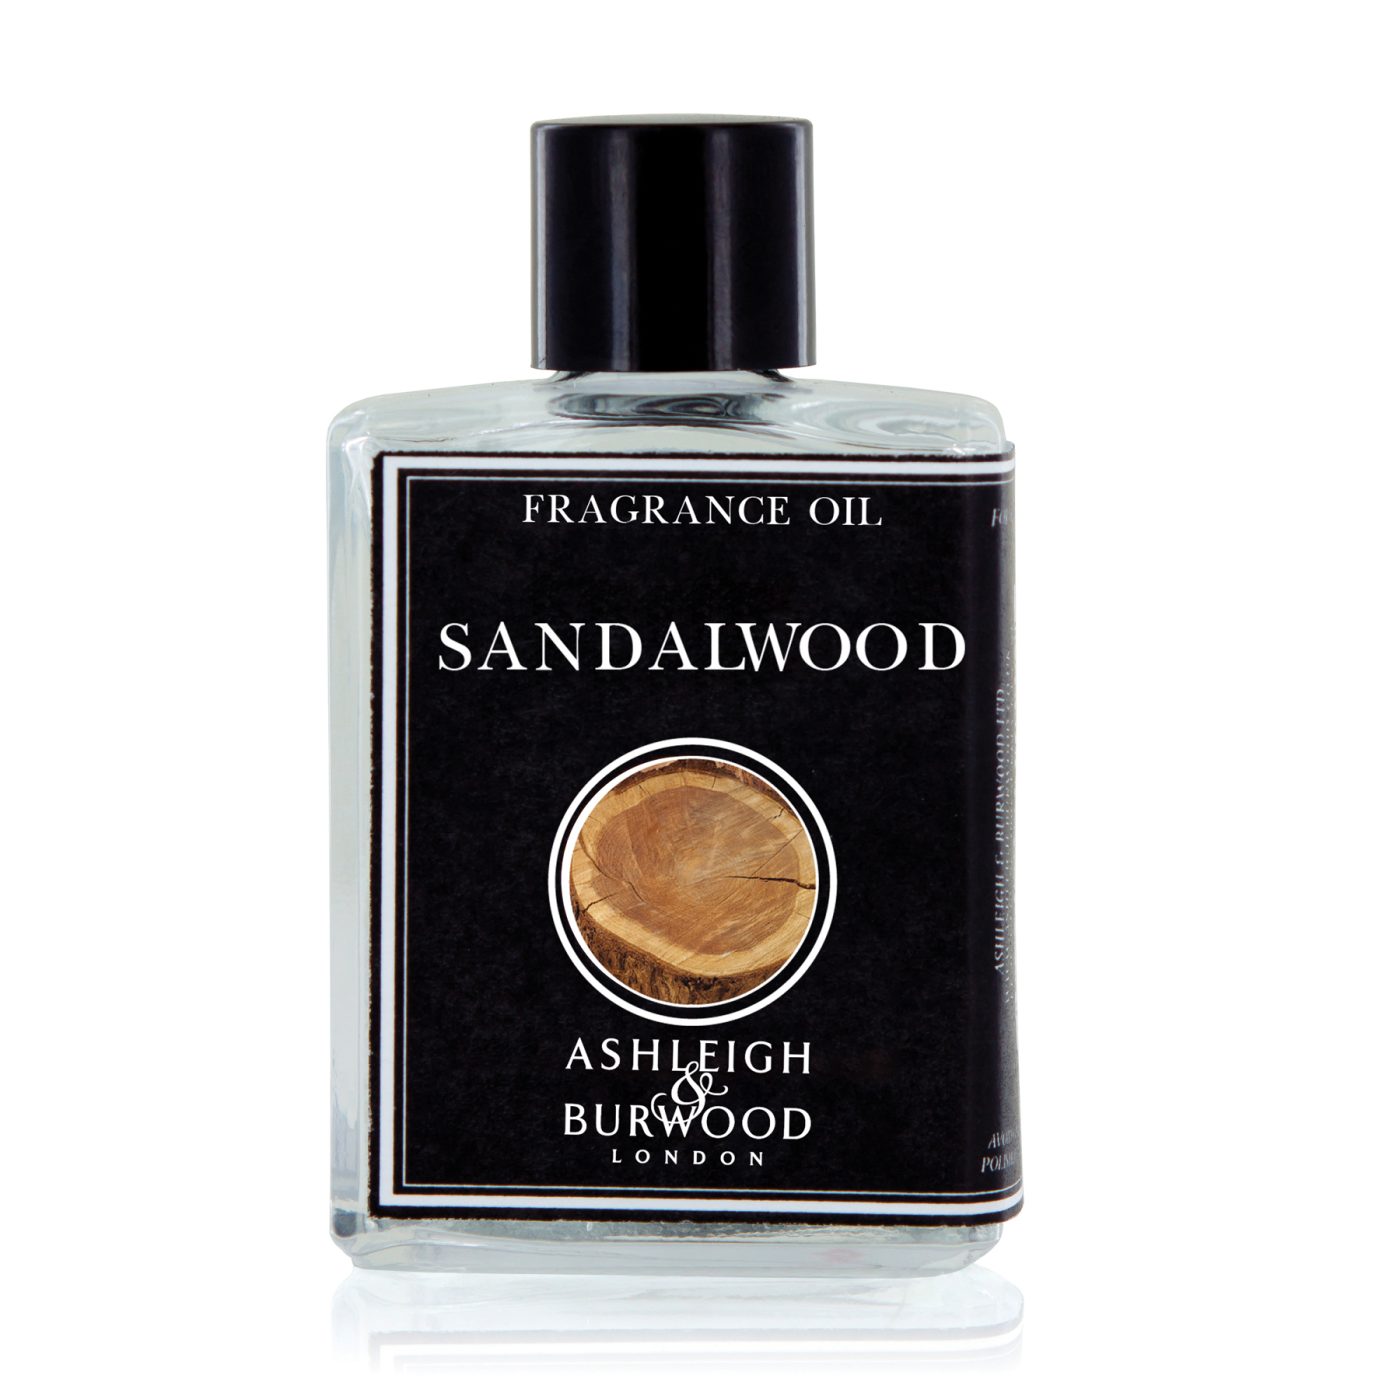 A & B Sandalwood Small Fragrance Oil